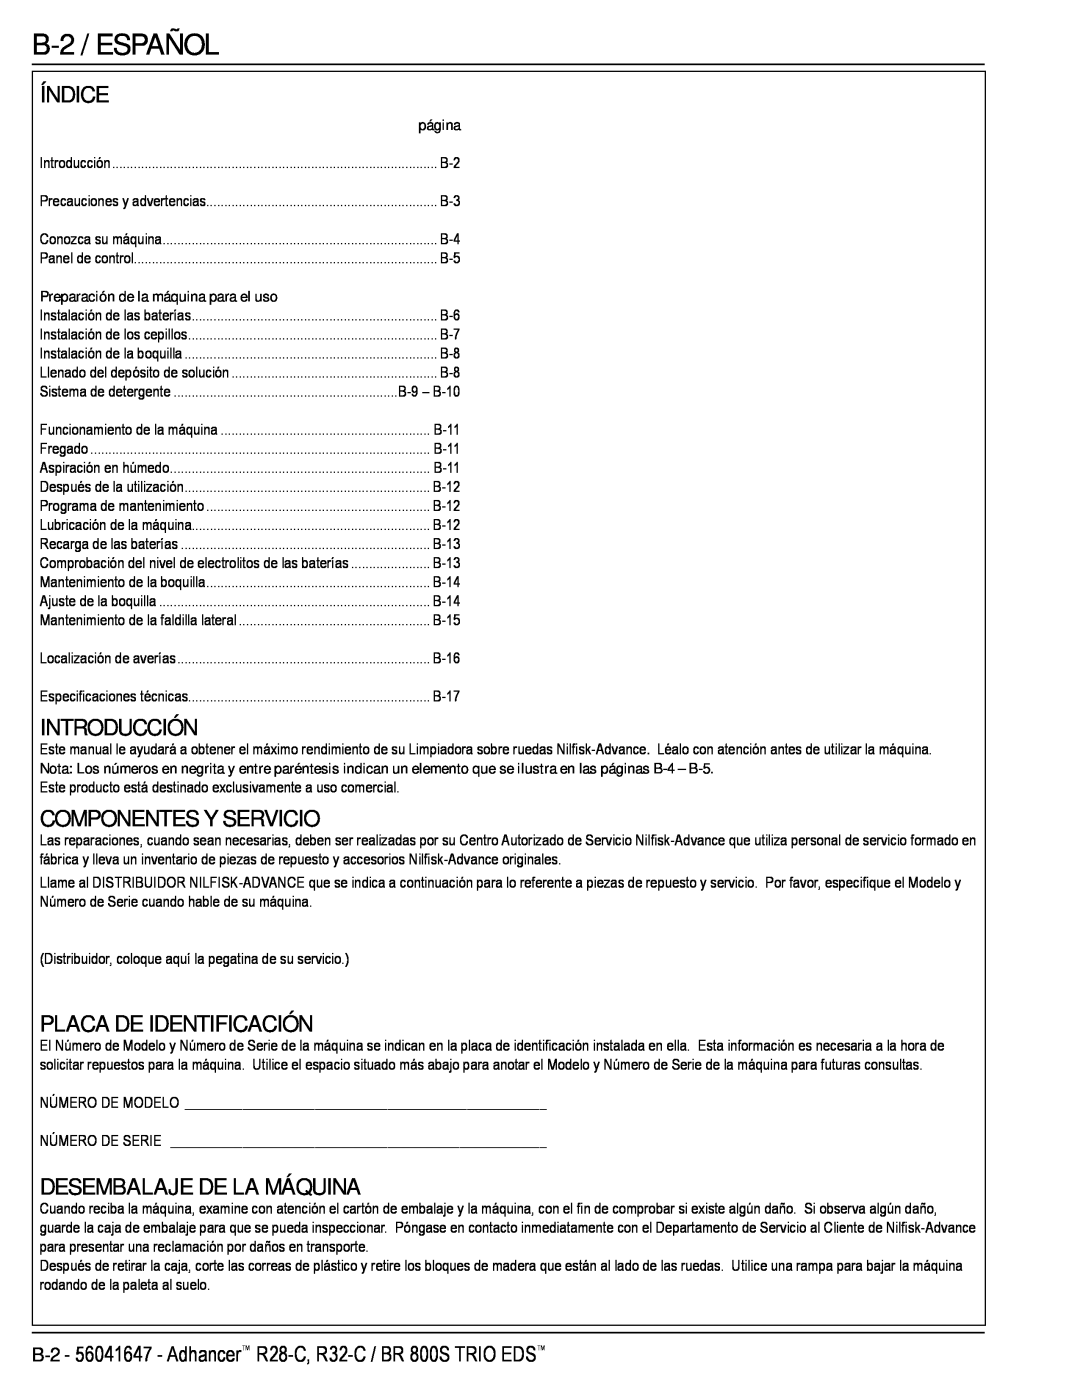 Nilfisk-Advance America 56316026 (R32-C) manual B-2 /ESPAÑOL, Índice, Introducción, Componentes Y Servicio, página 